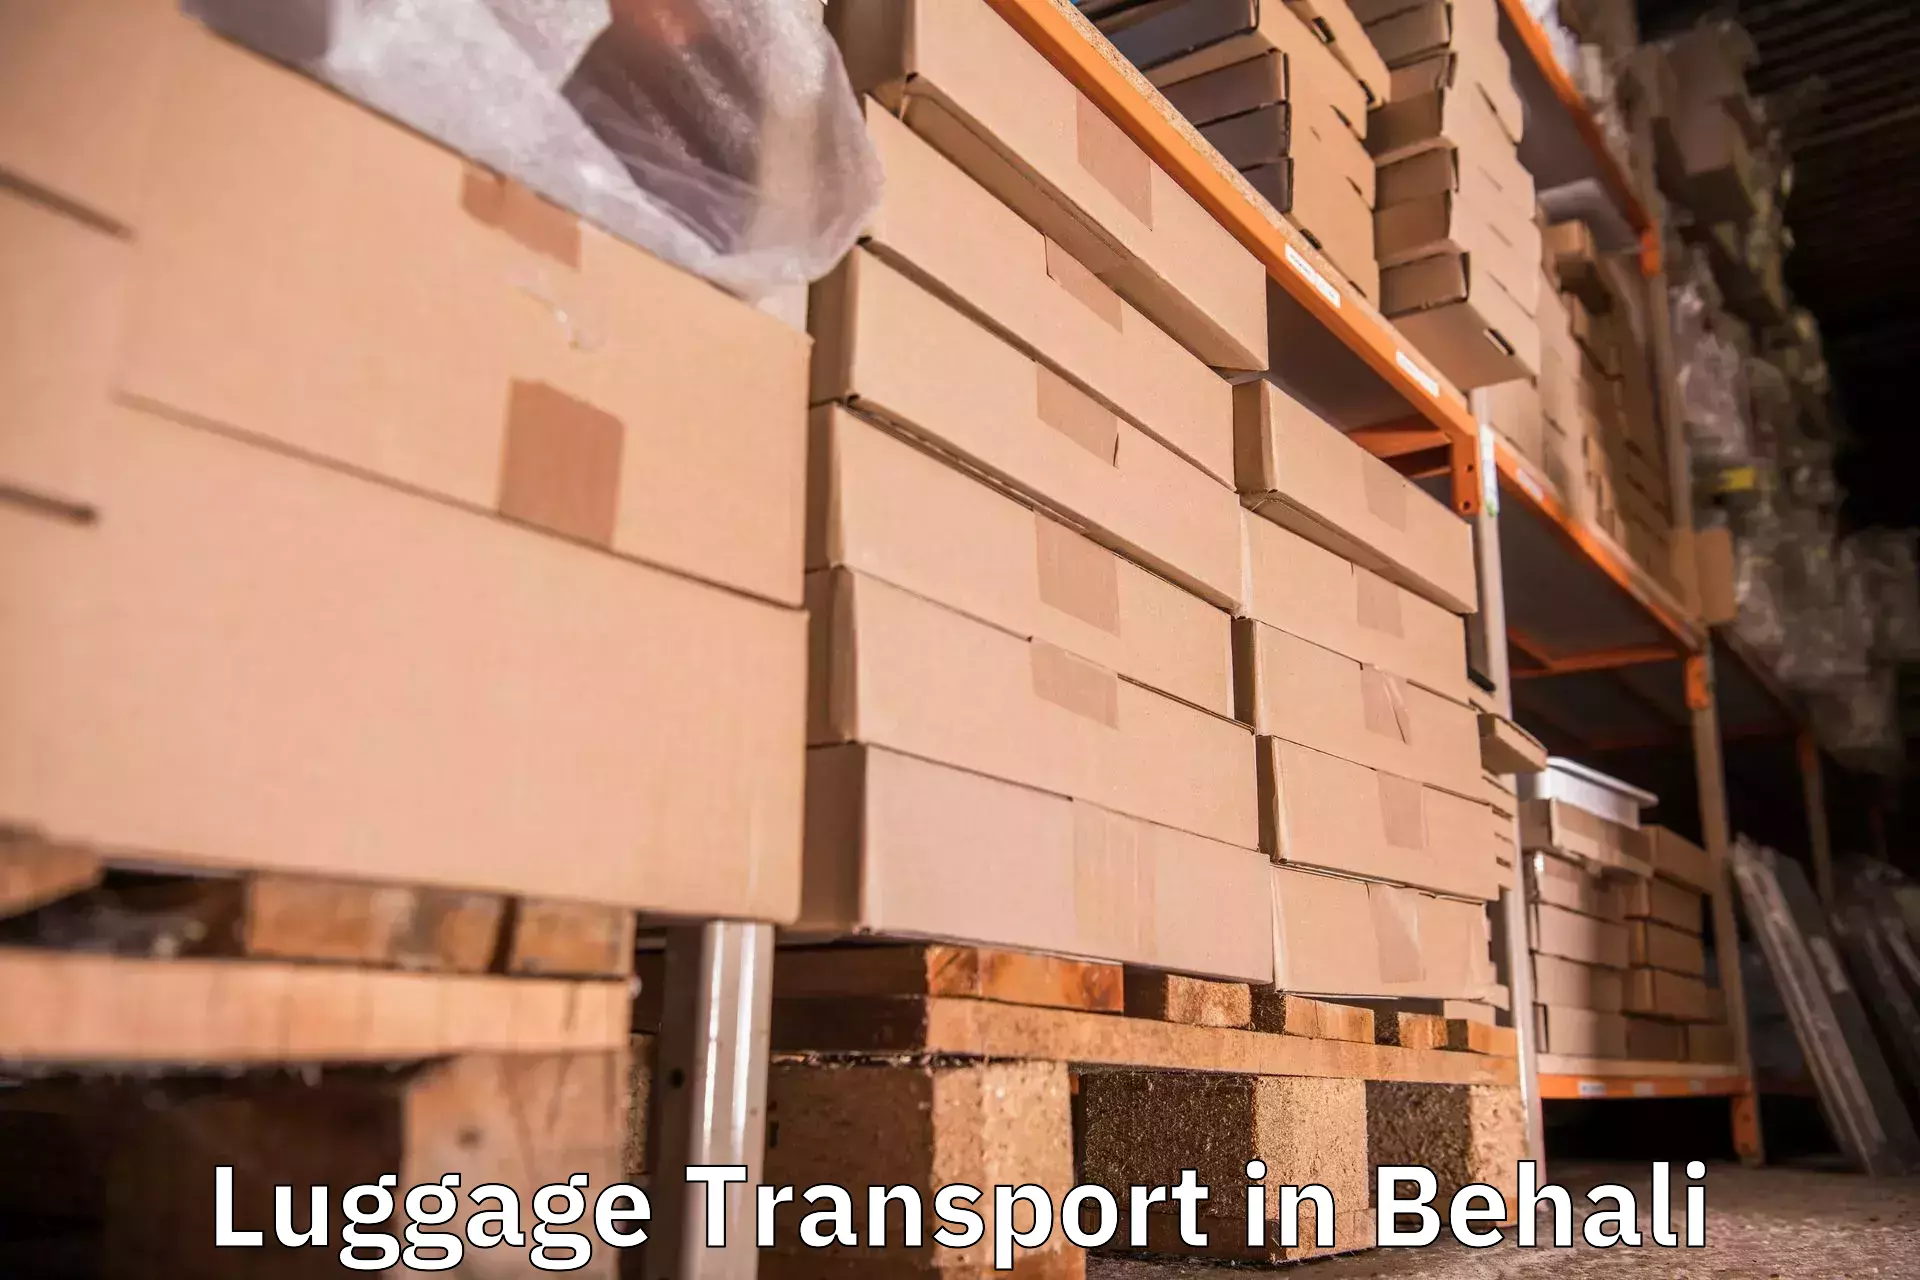 Baggage transport management in Behali